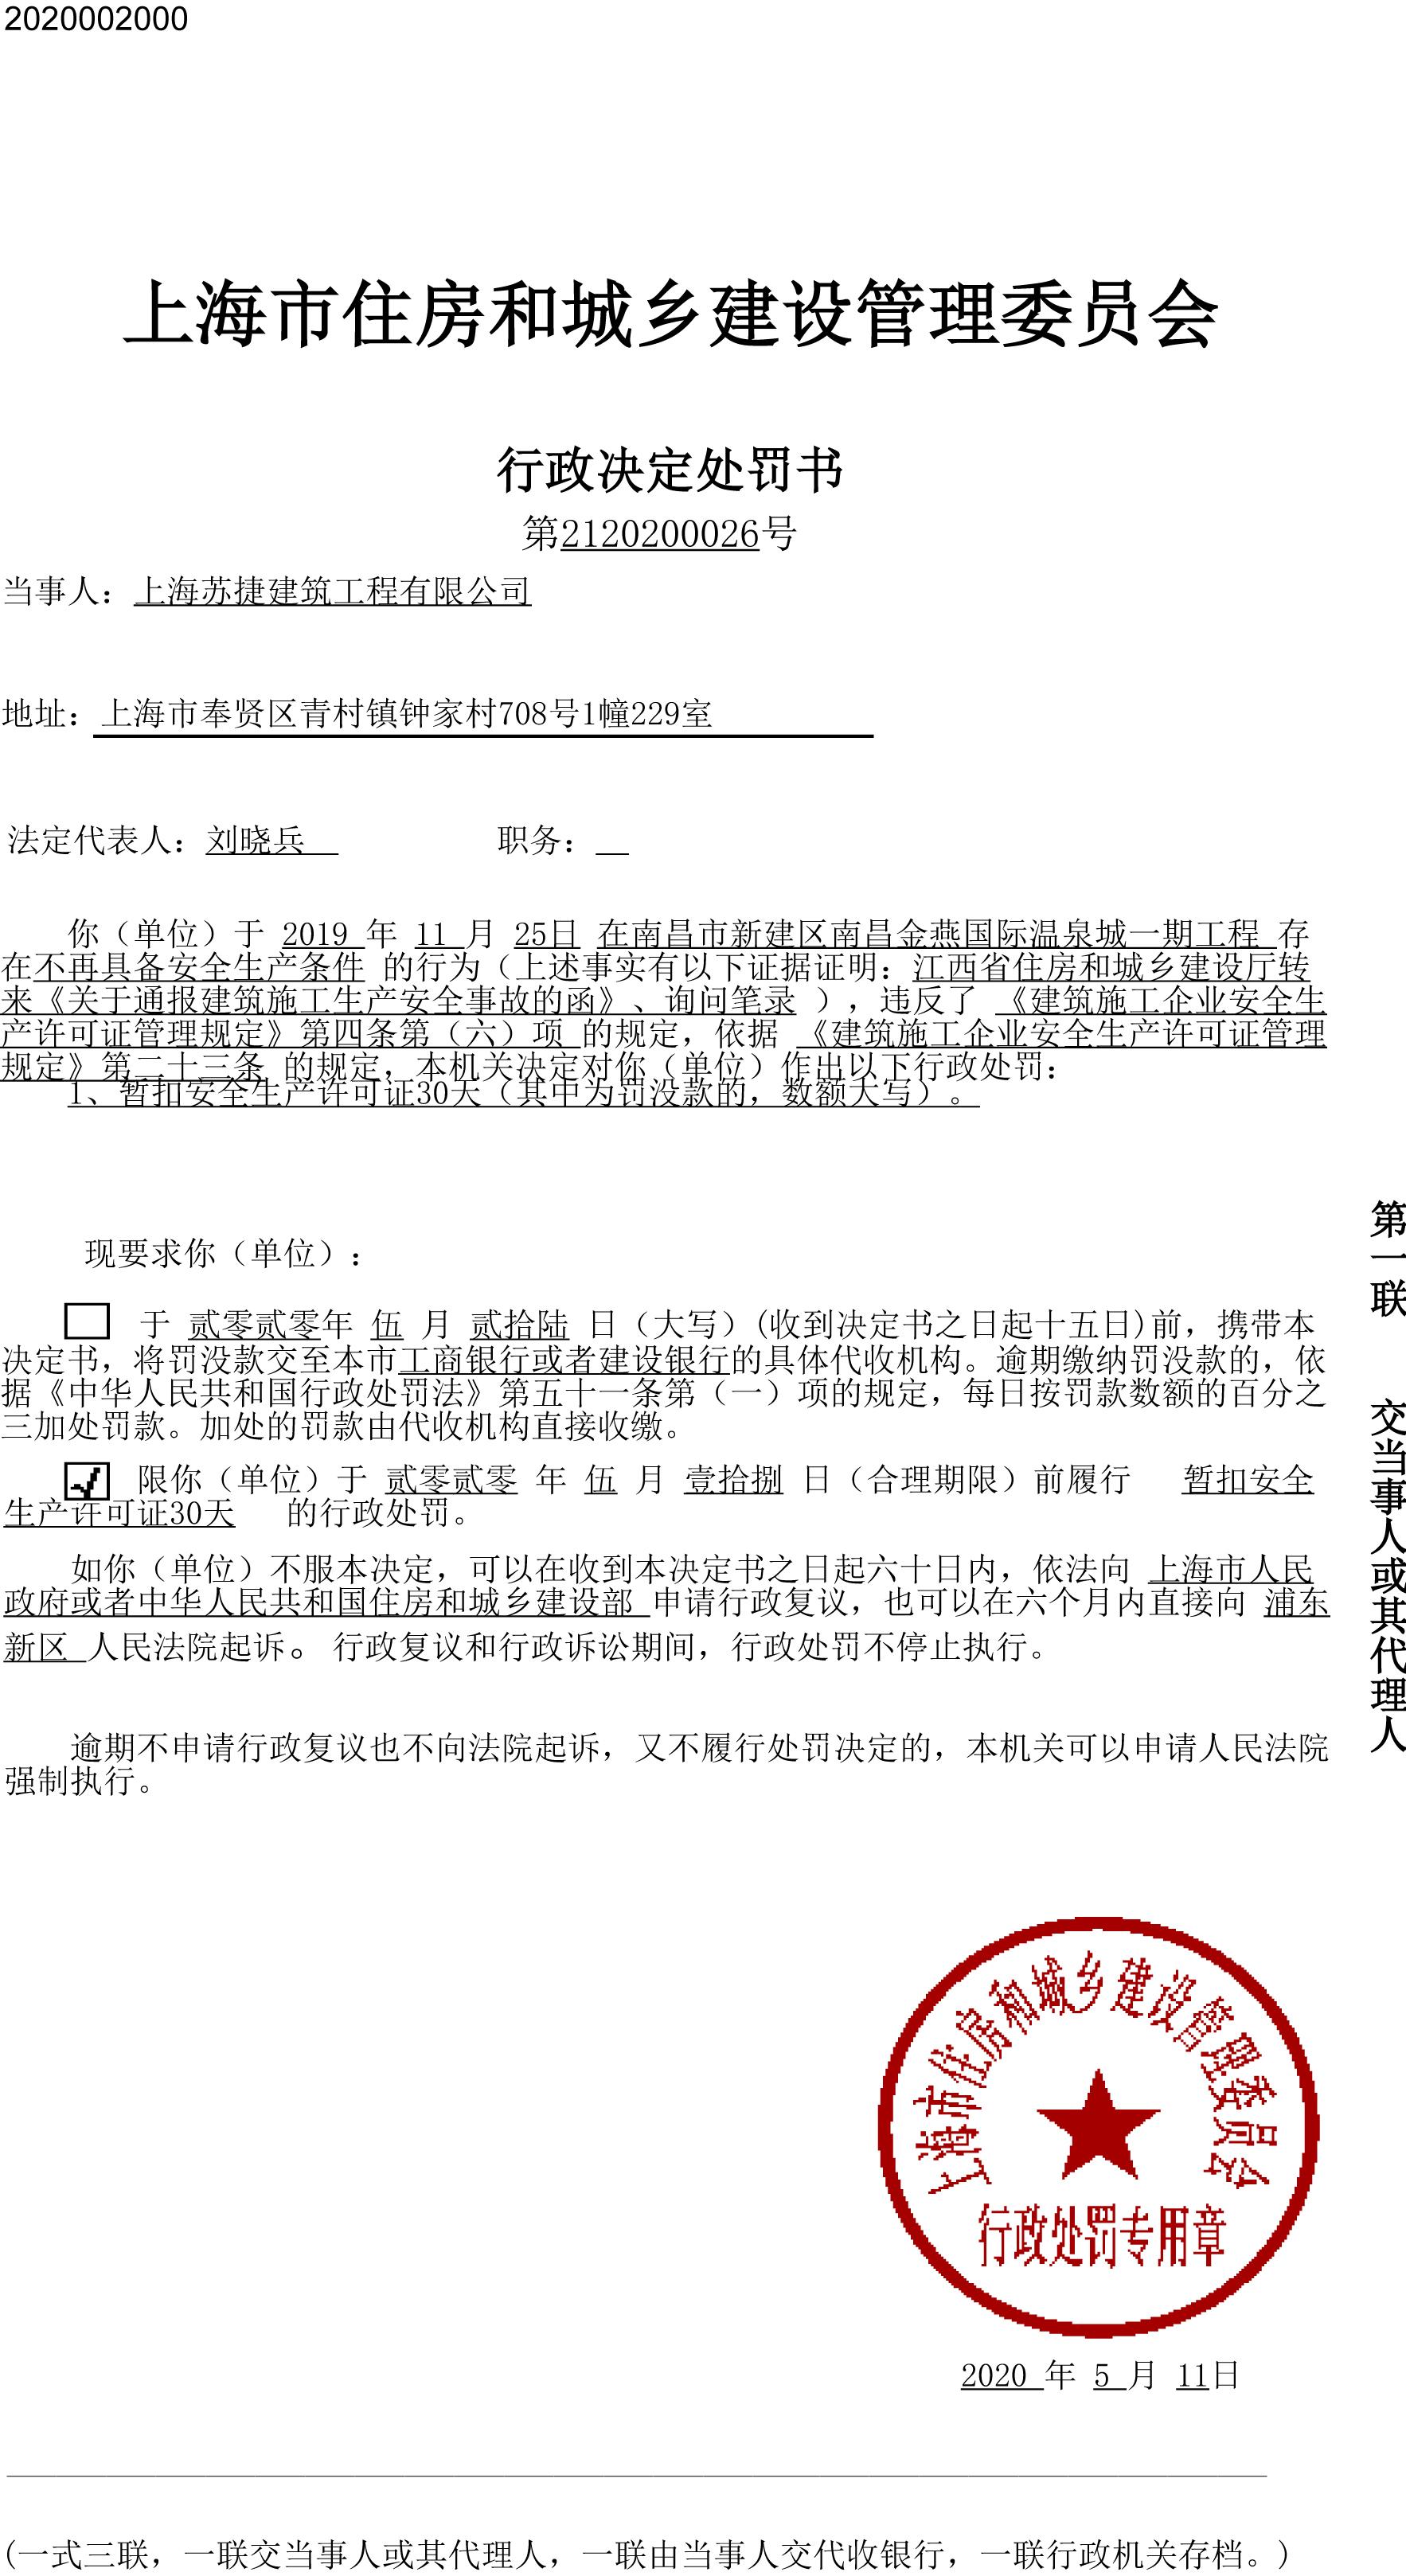 上海苏捷建筑工程有限公司南昌金燕国际温泉城工程违规被暂扣安全生产许可证